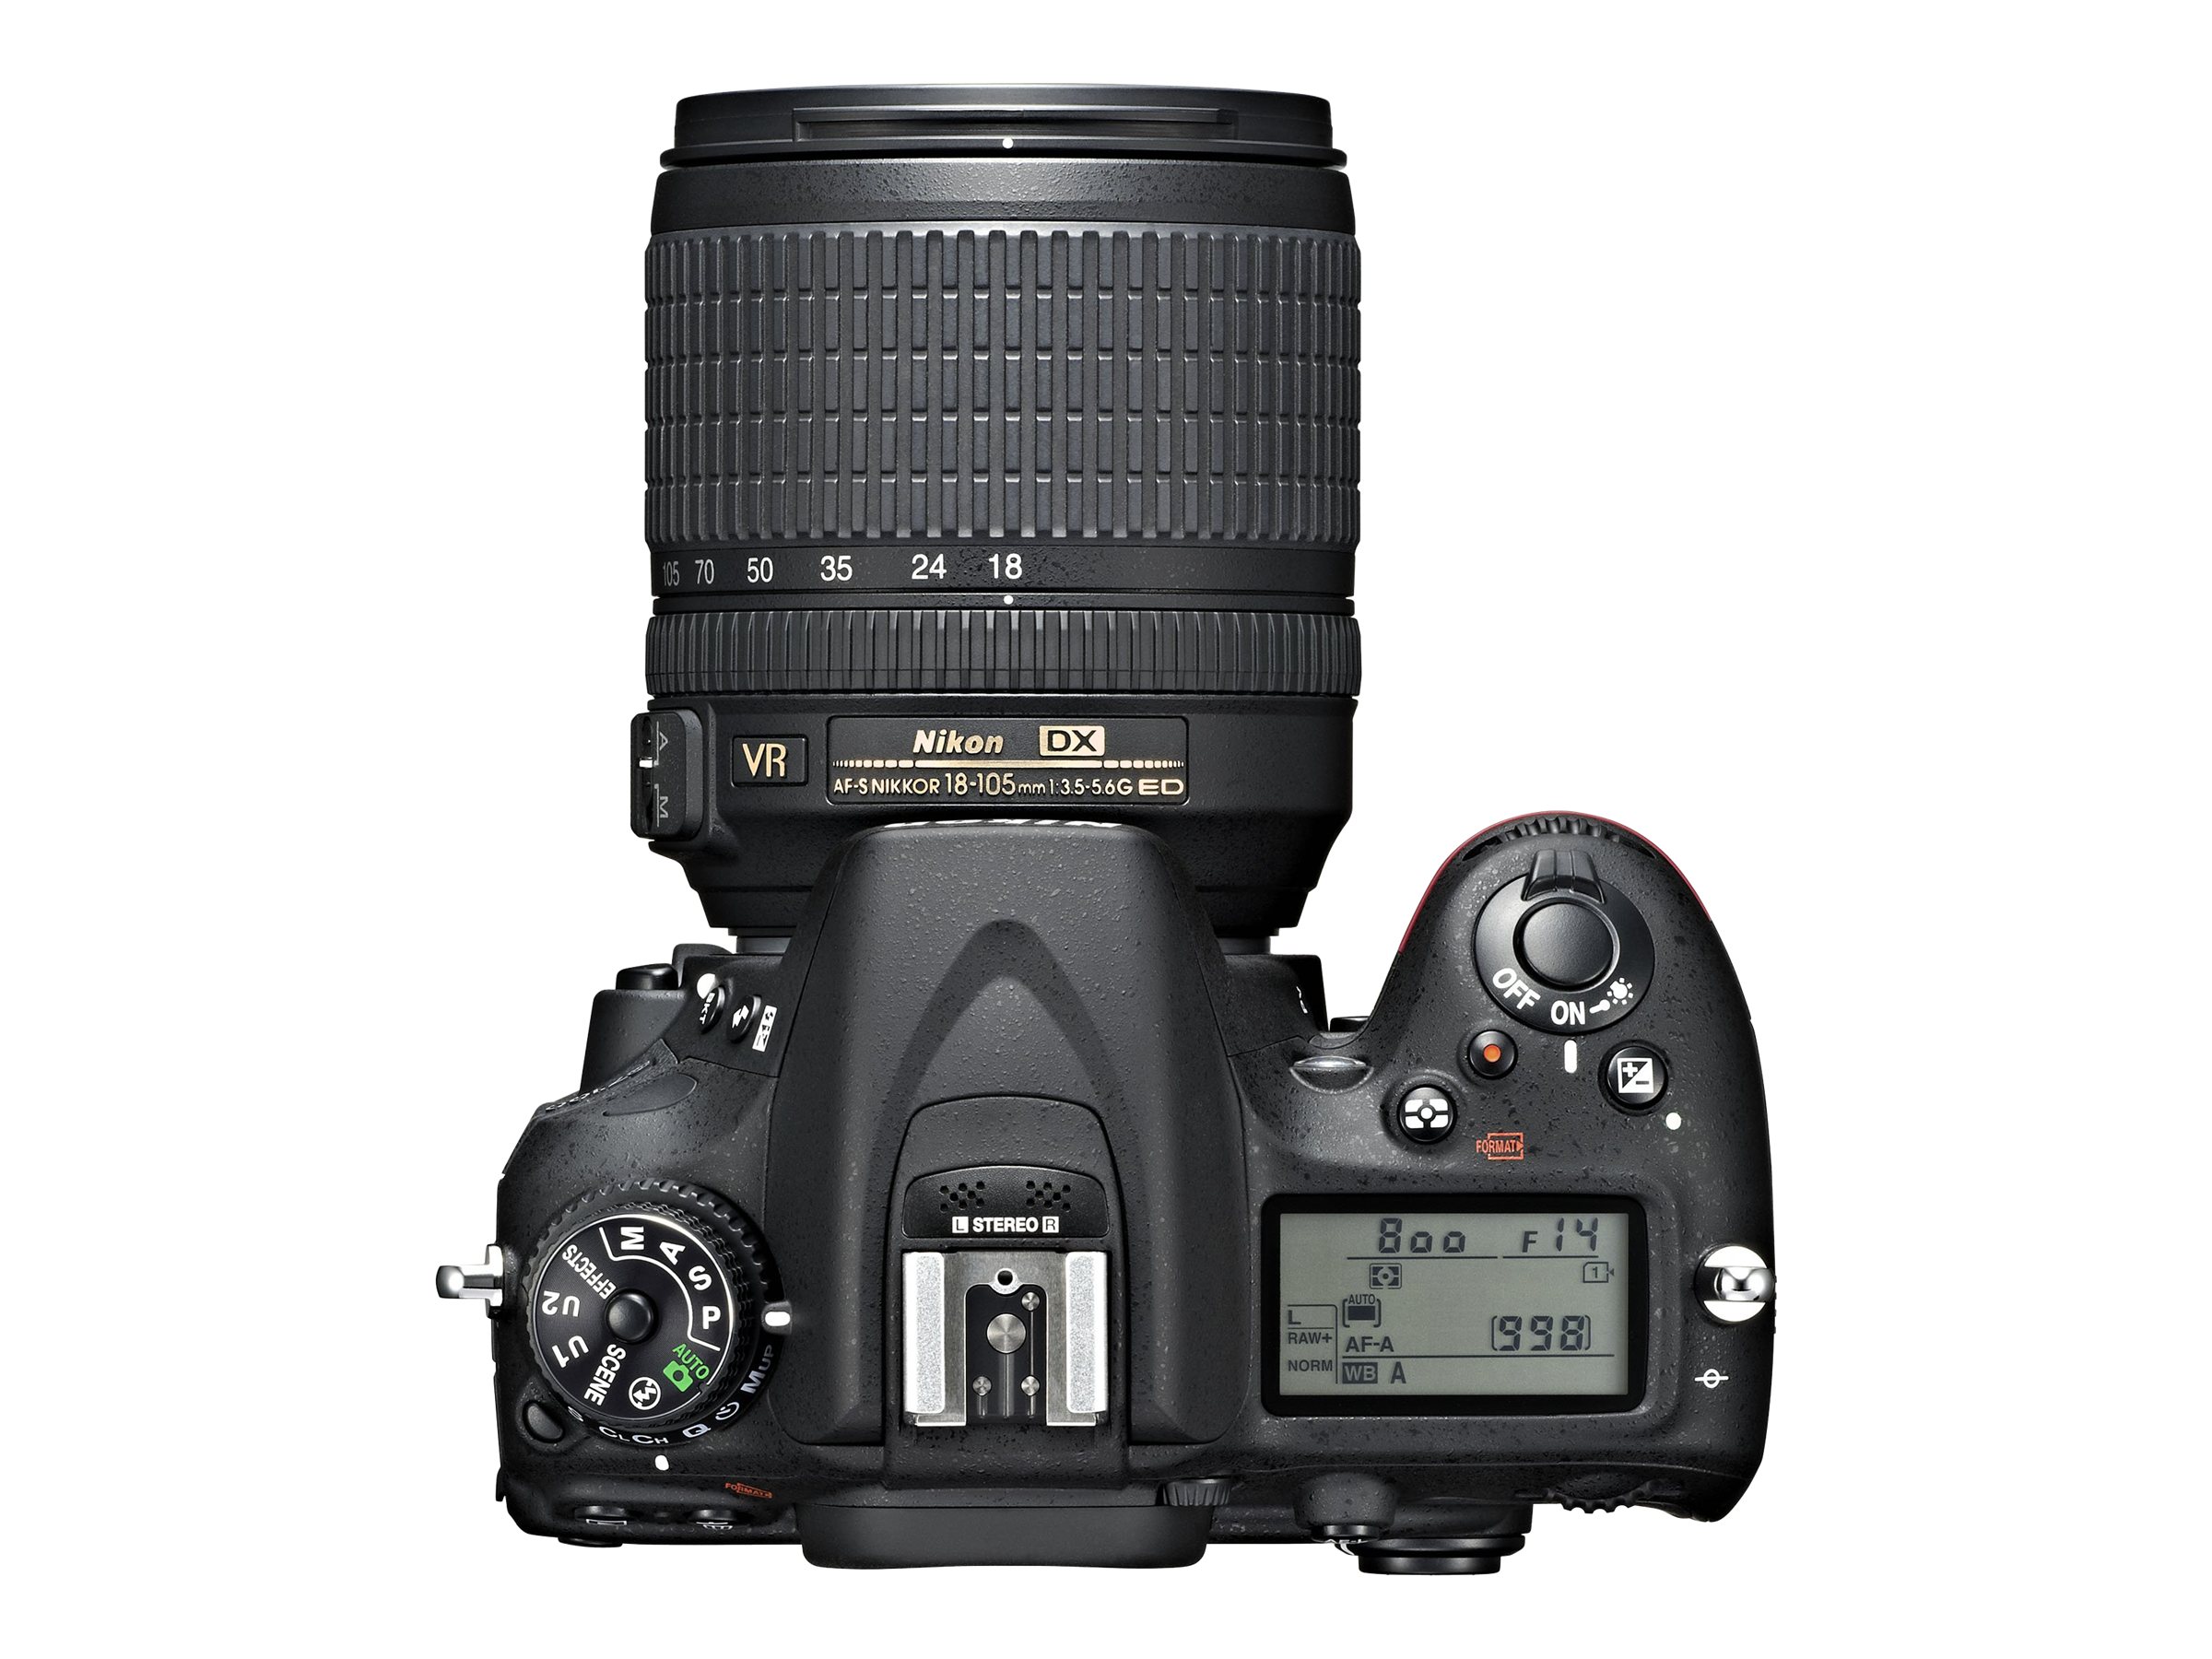 Nikon D7100 - Digital camera - SLR - 24.1 MP - APS-C - 7.8x optical zoom AF-S DX 18-140mm and AF-S 55-300mm VR lenses - black - image 4 of 5